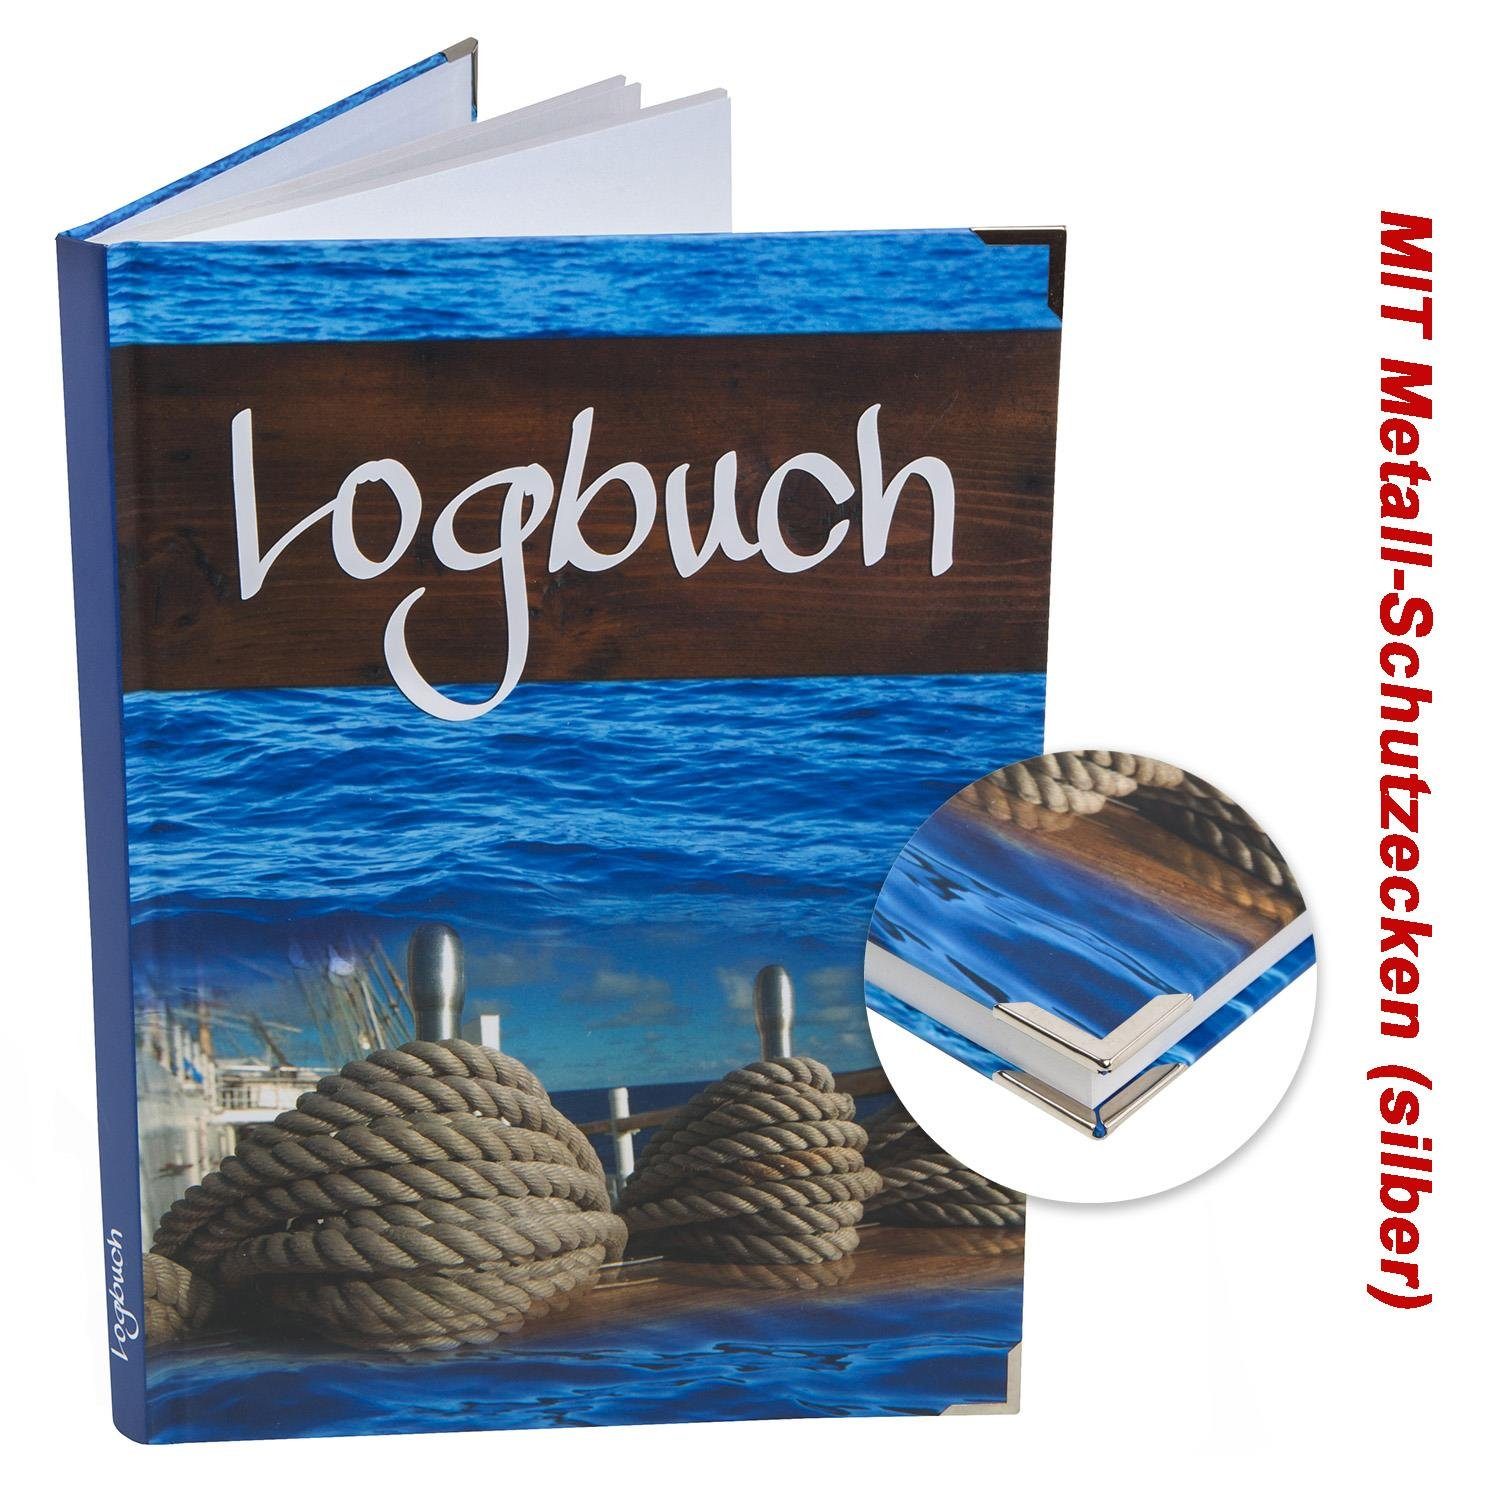 Metallecken mit DIN A4 Logbuch Tagebuch Sailing Hardcover Logbuch-Verlag